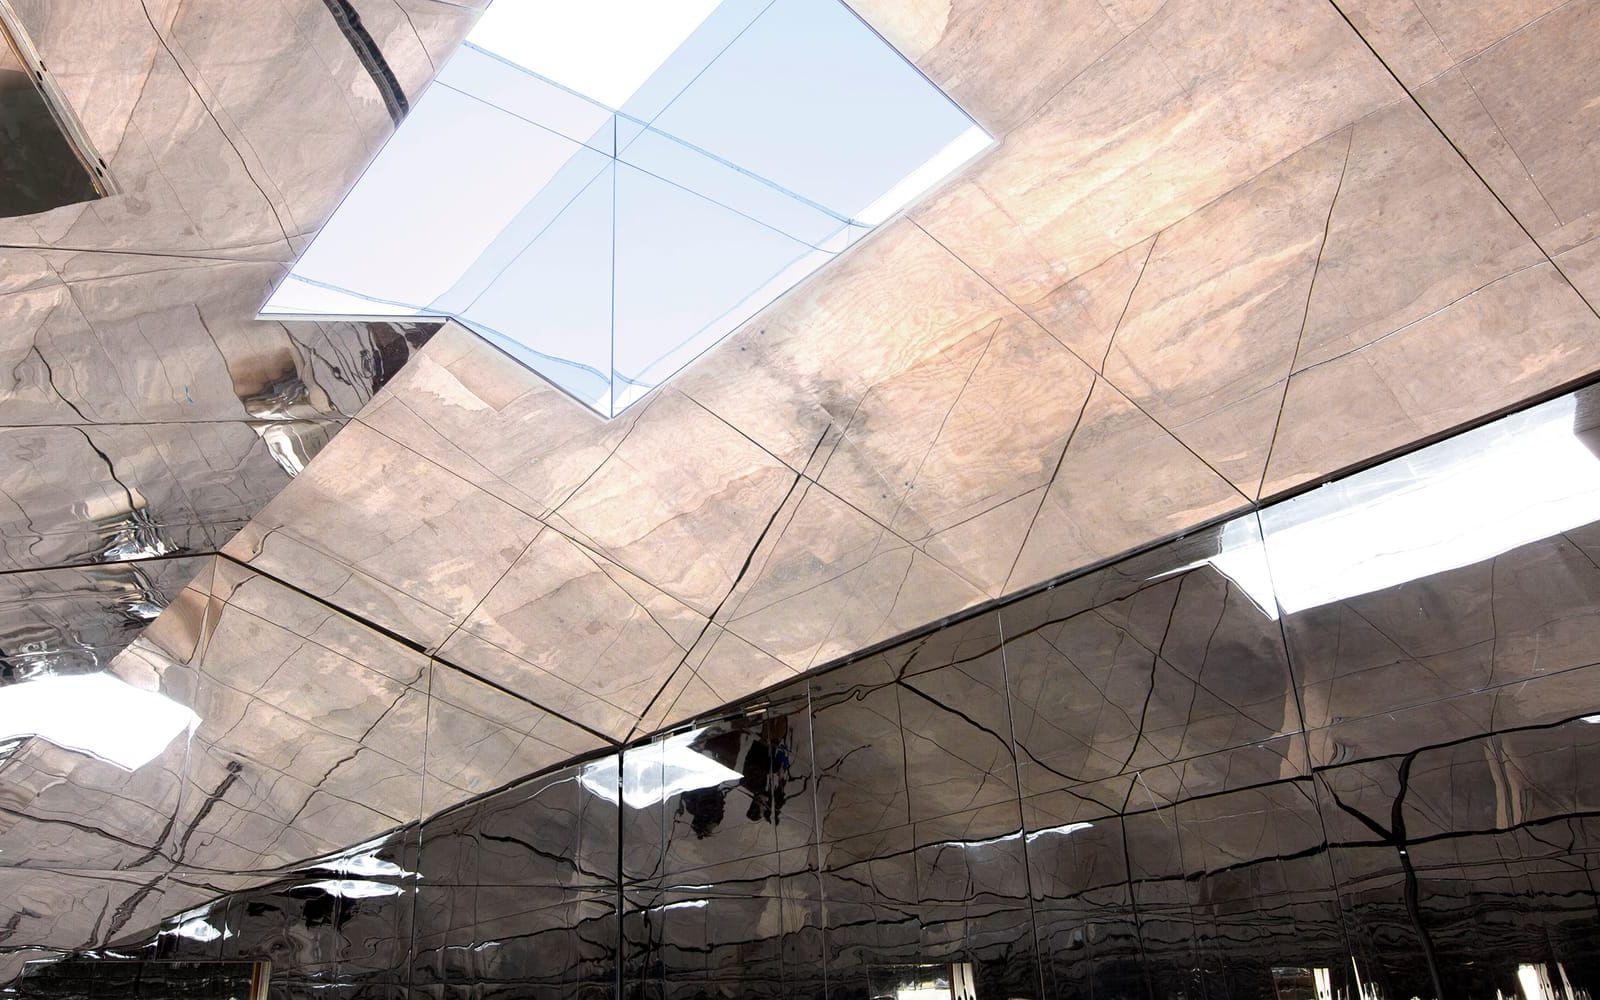 Här reflekteras golvet i det spegelbeklädda taket. Foto: Dakota Higgins
